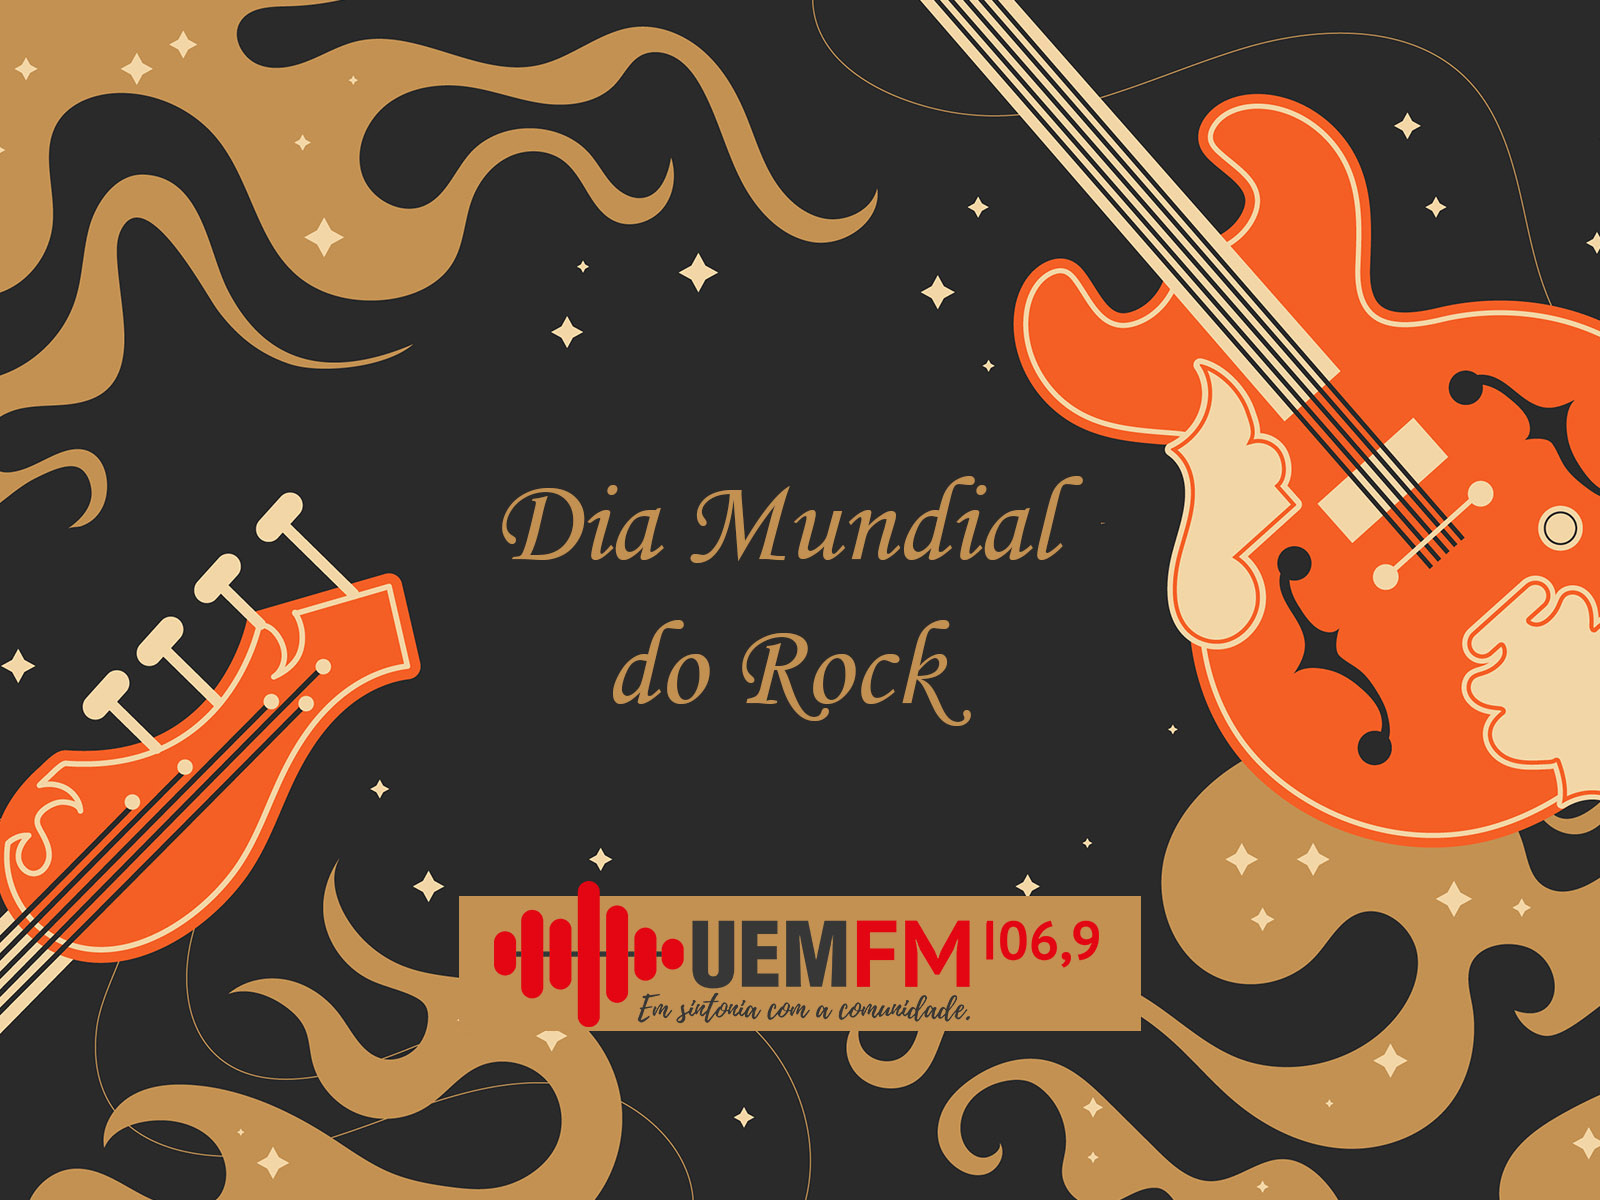 UEM FM dia mundial do rock site